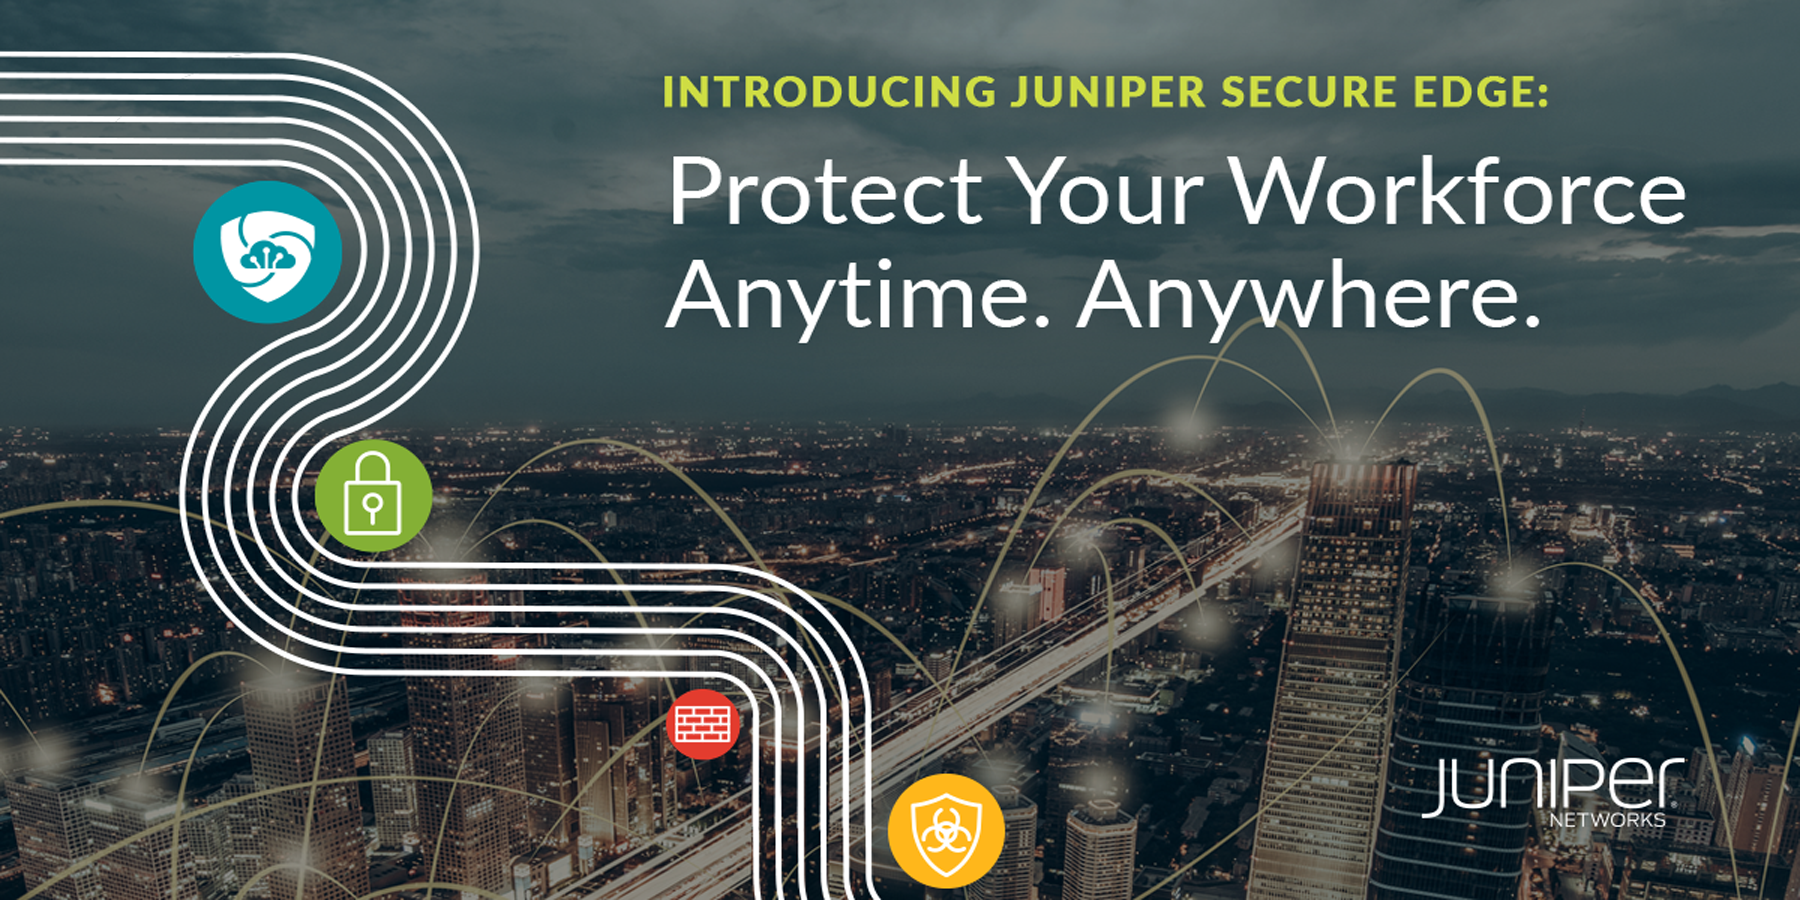 Juniper facilite la migration vers SASE en proposant de nouveaux services de pare-feu cloud, conçus pour protéger les employés partout et à tout moment